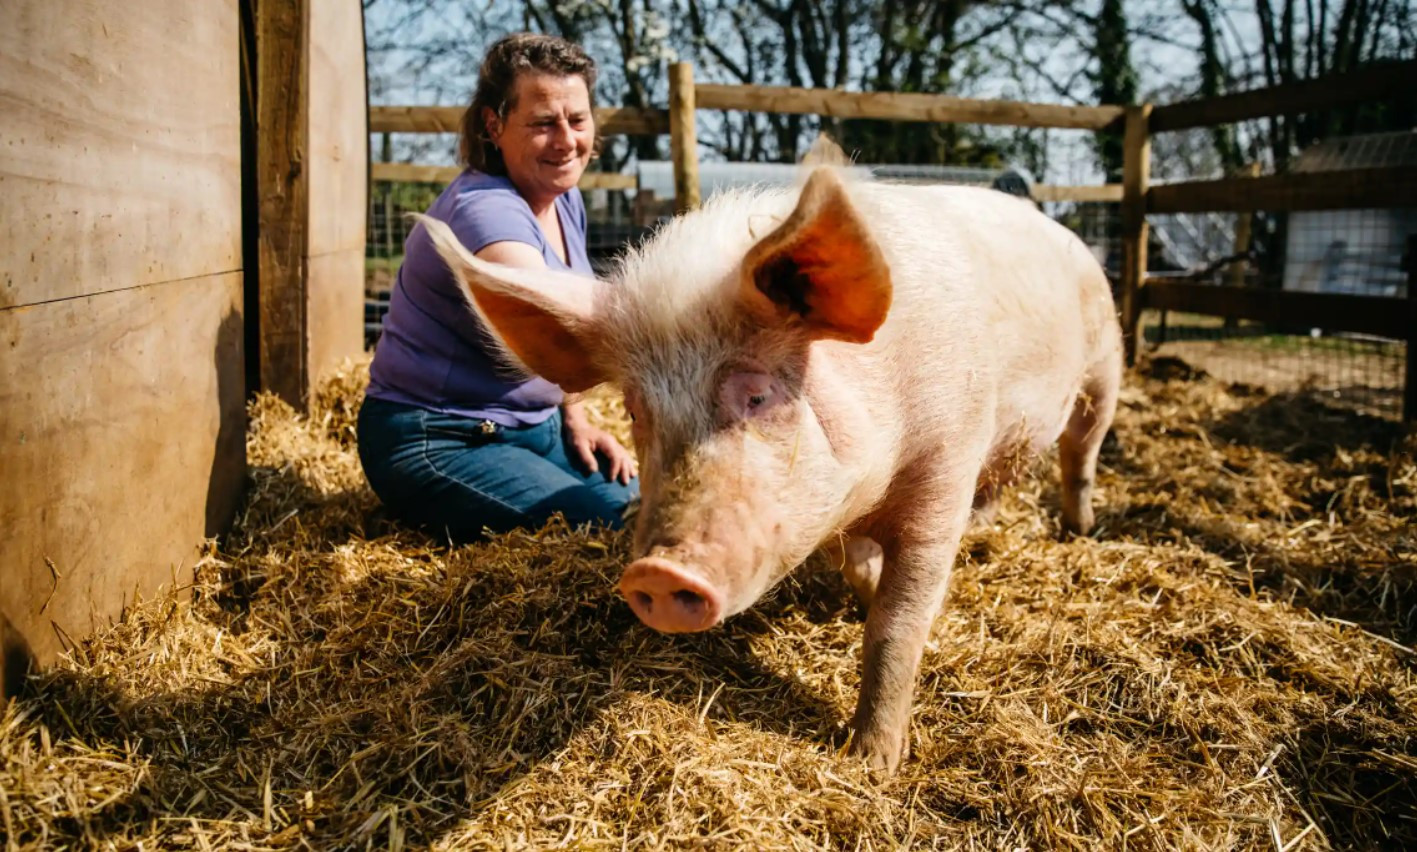 Bà Ness Shillito, người đồng sáng lập Trang trại Hòa nhập, với một trong những chú lợn. Ảnh: The Guardian.